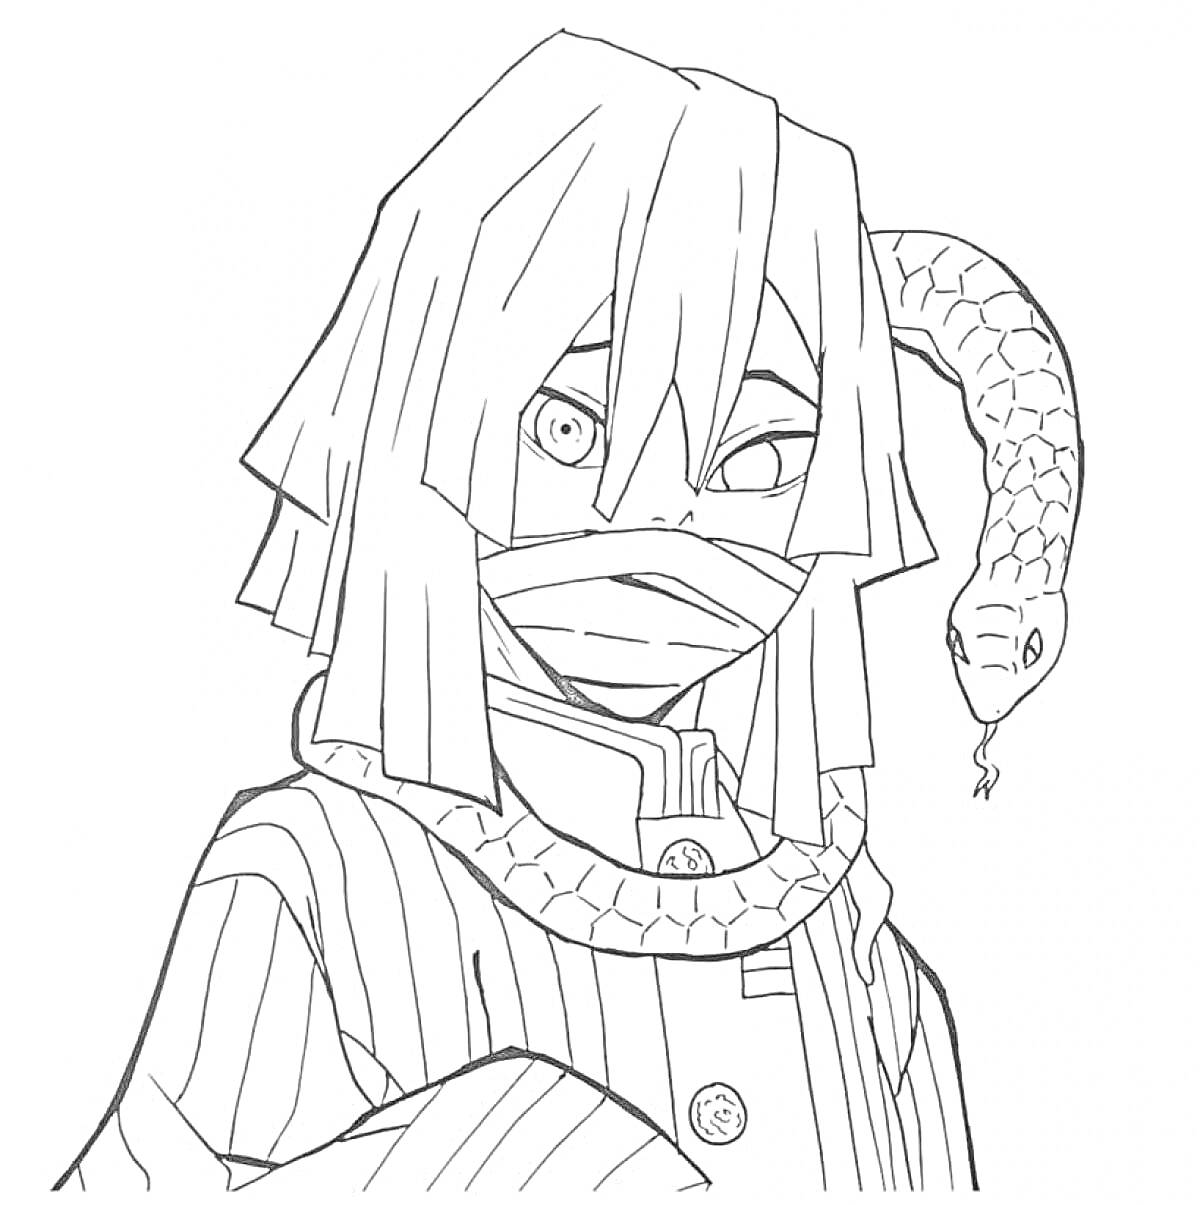 персонаж в маске с длинными волосами и змеей на плече